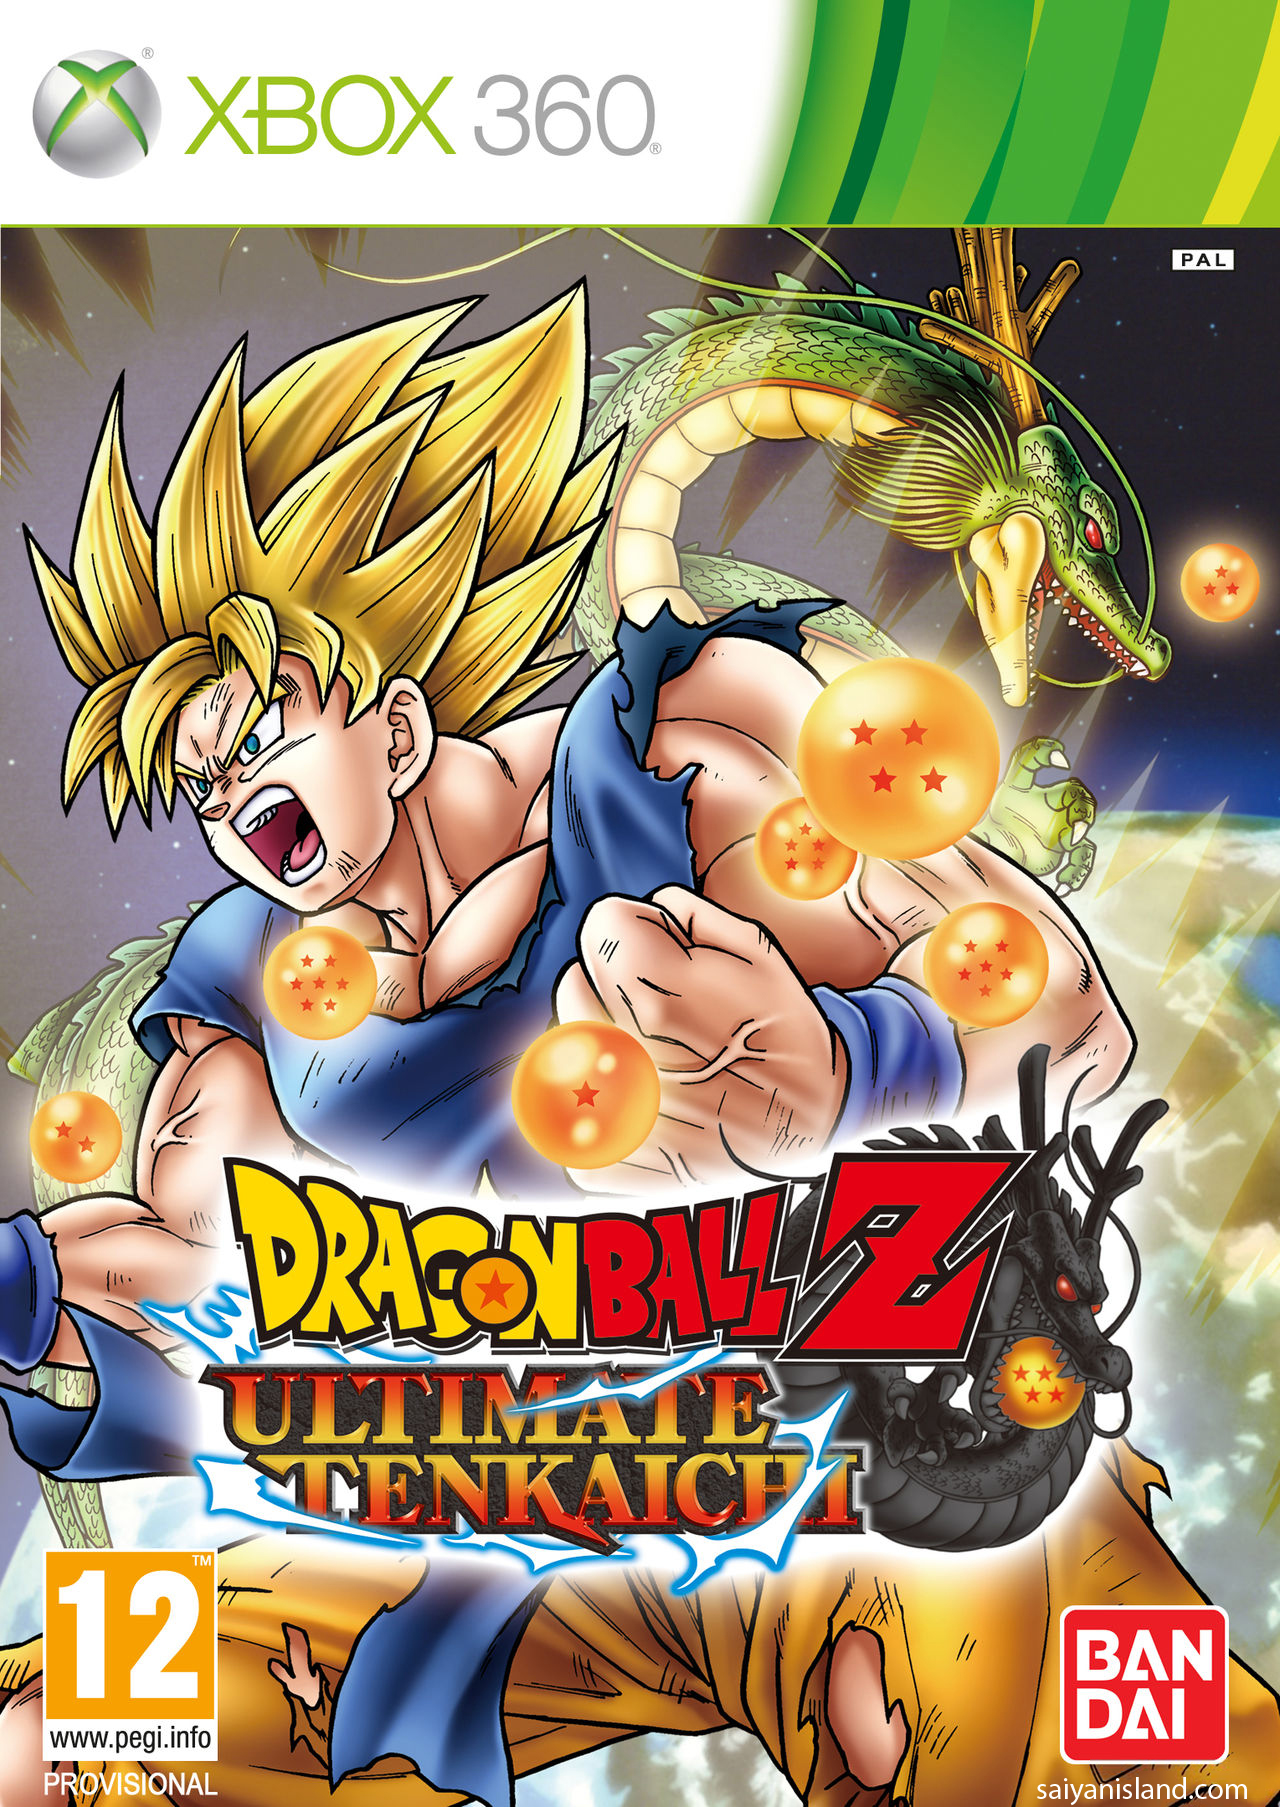 Dragon+ball+z+ultimate+tenkaichi+demo+release+date